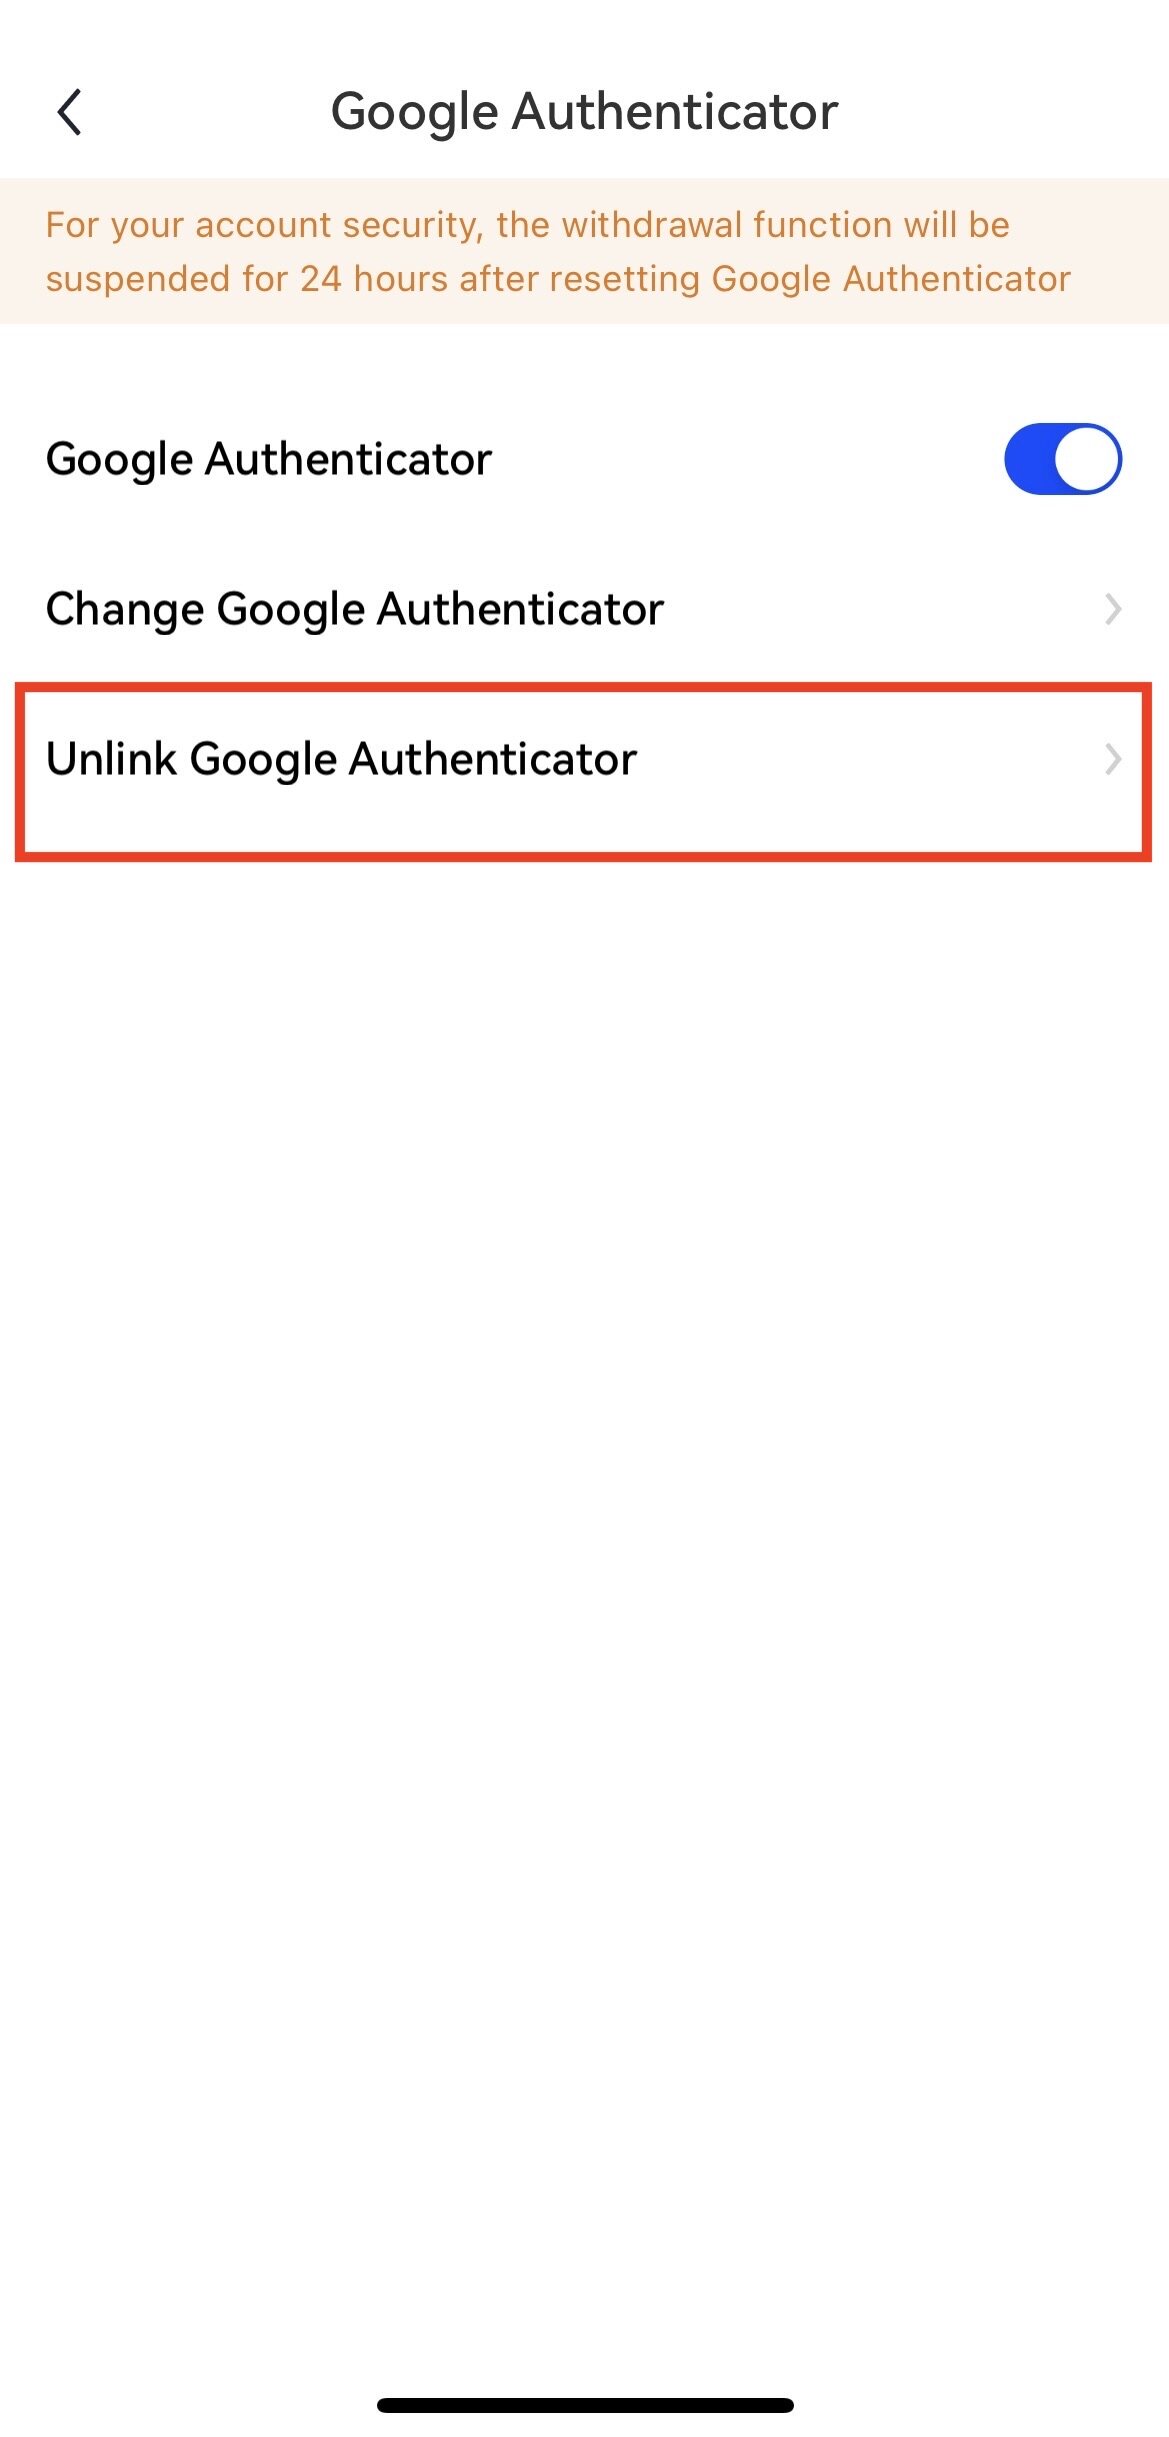 วิธียกเลิกการเชื่อมโยง Google Authenticator (แอป) | Okx